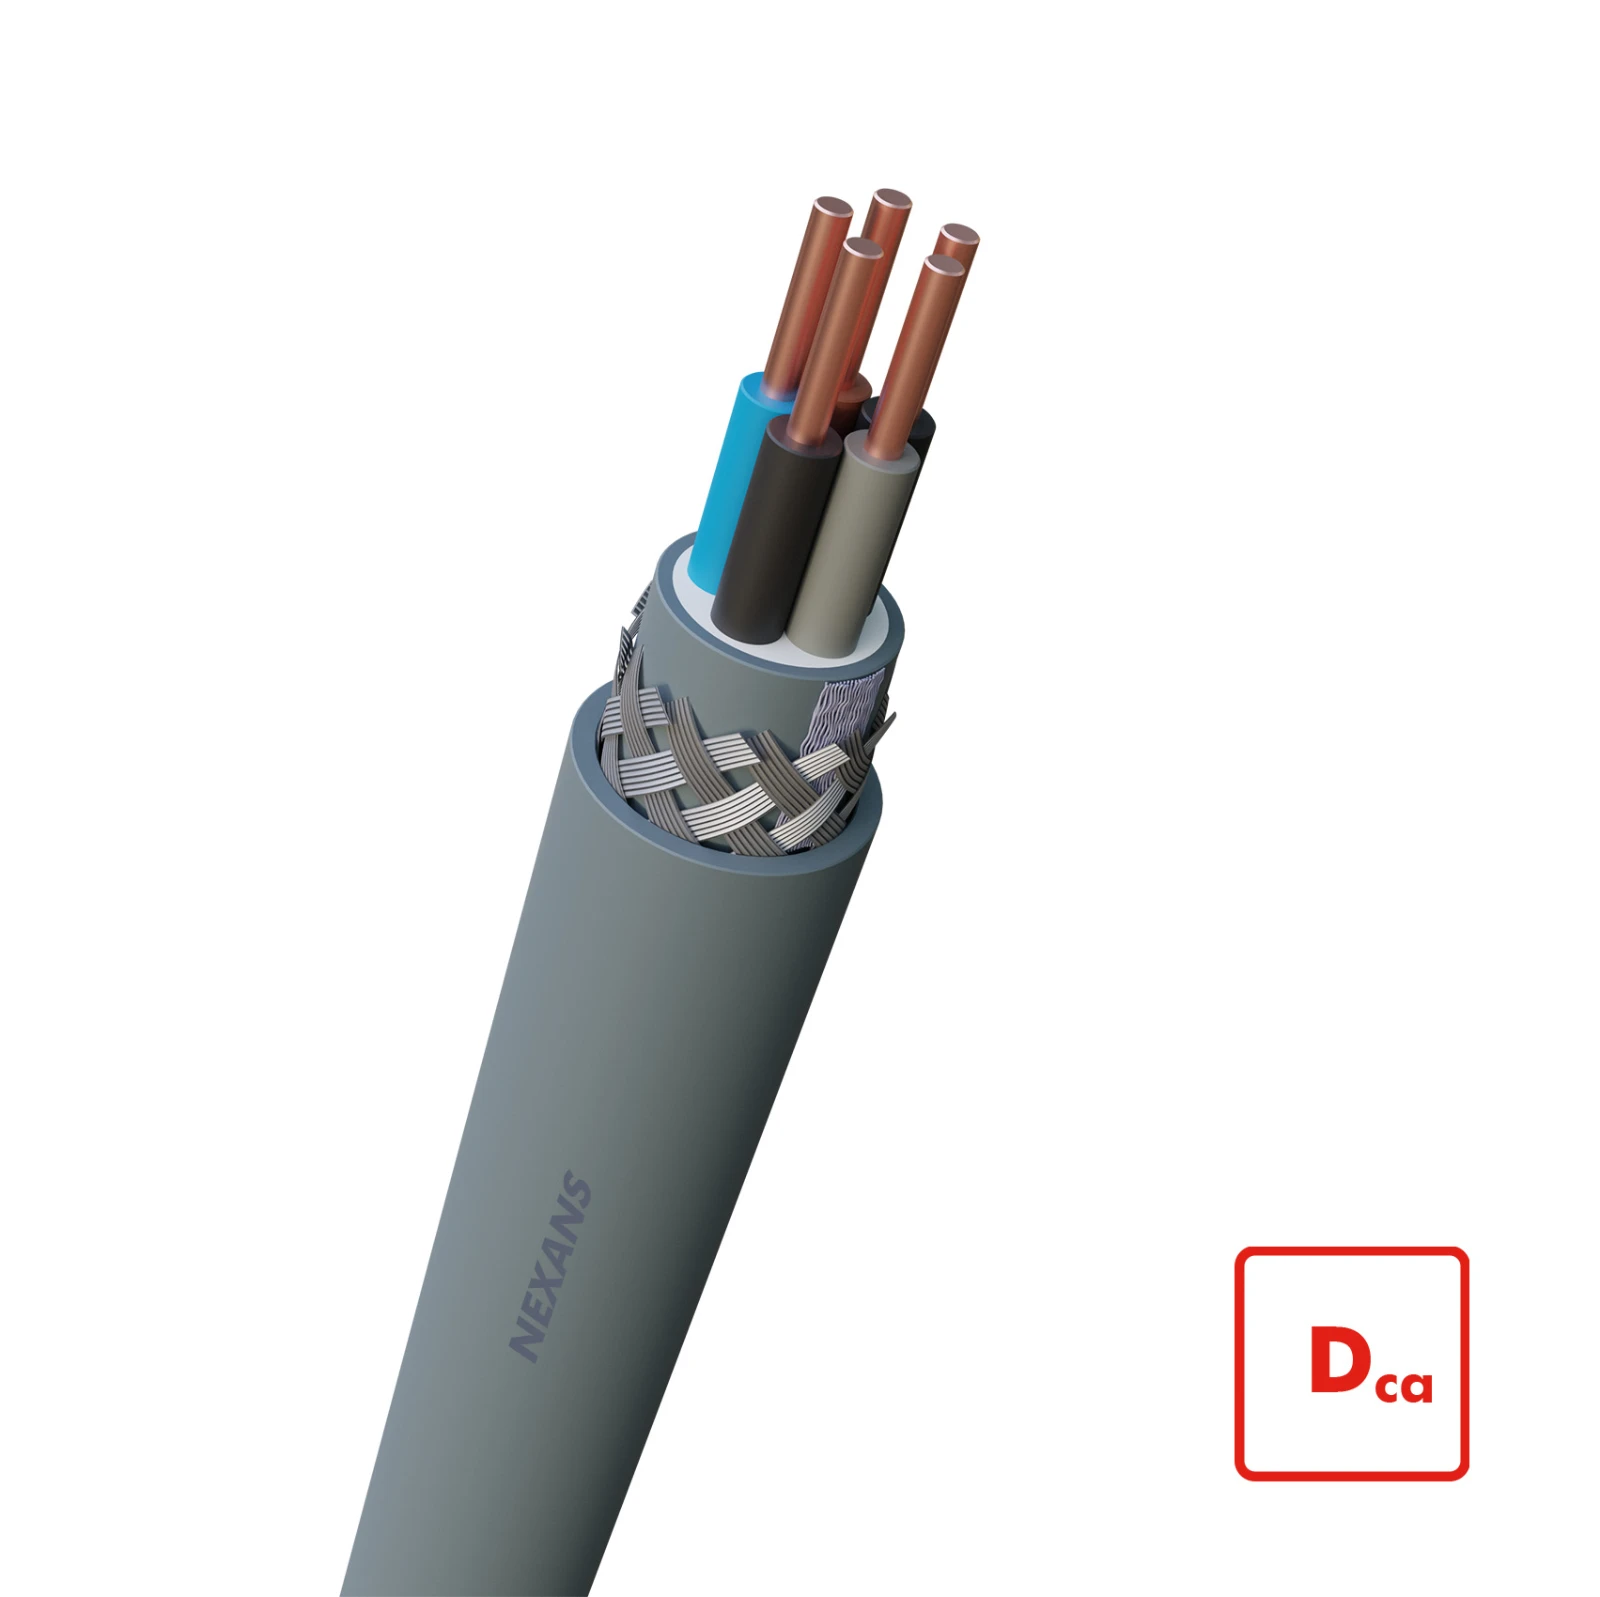 Nexans Voedingskabel >= 1 kV, voor vaste aanleg VO-YMvKas Dca-s2